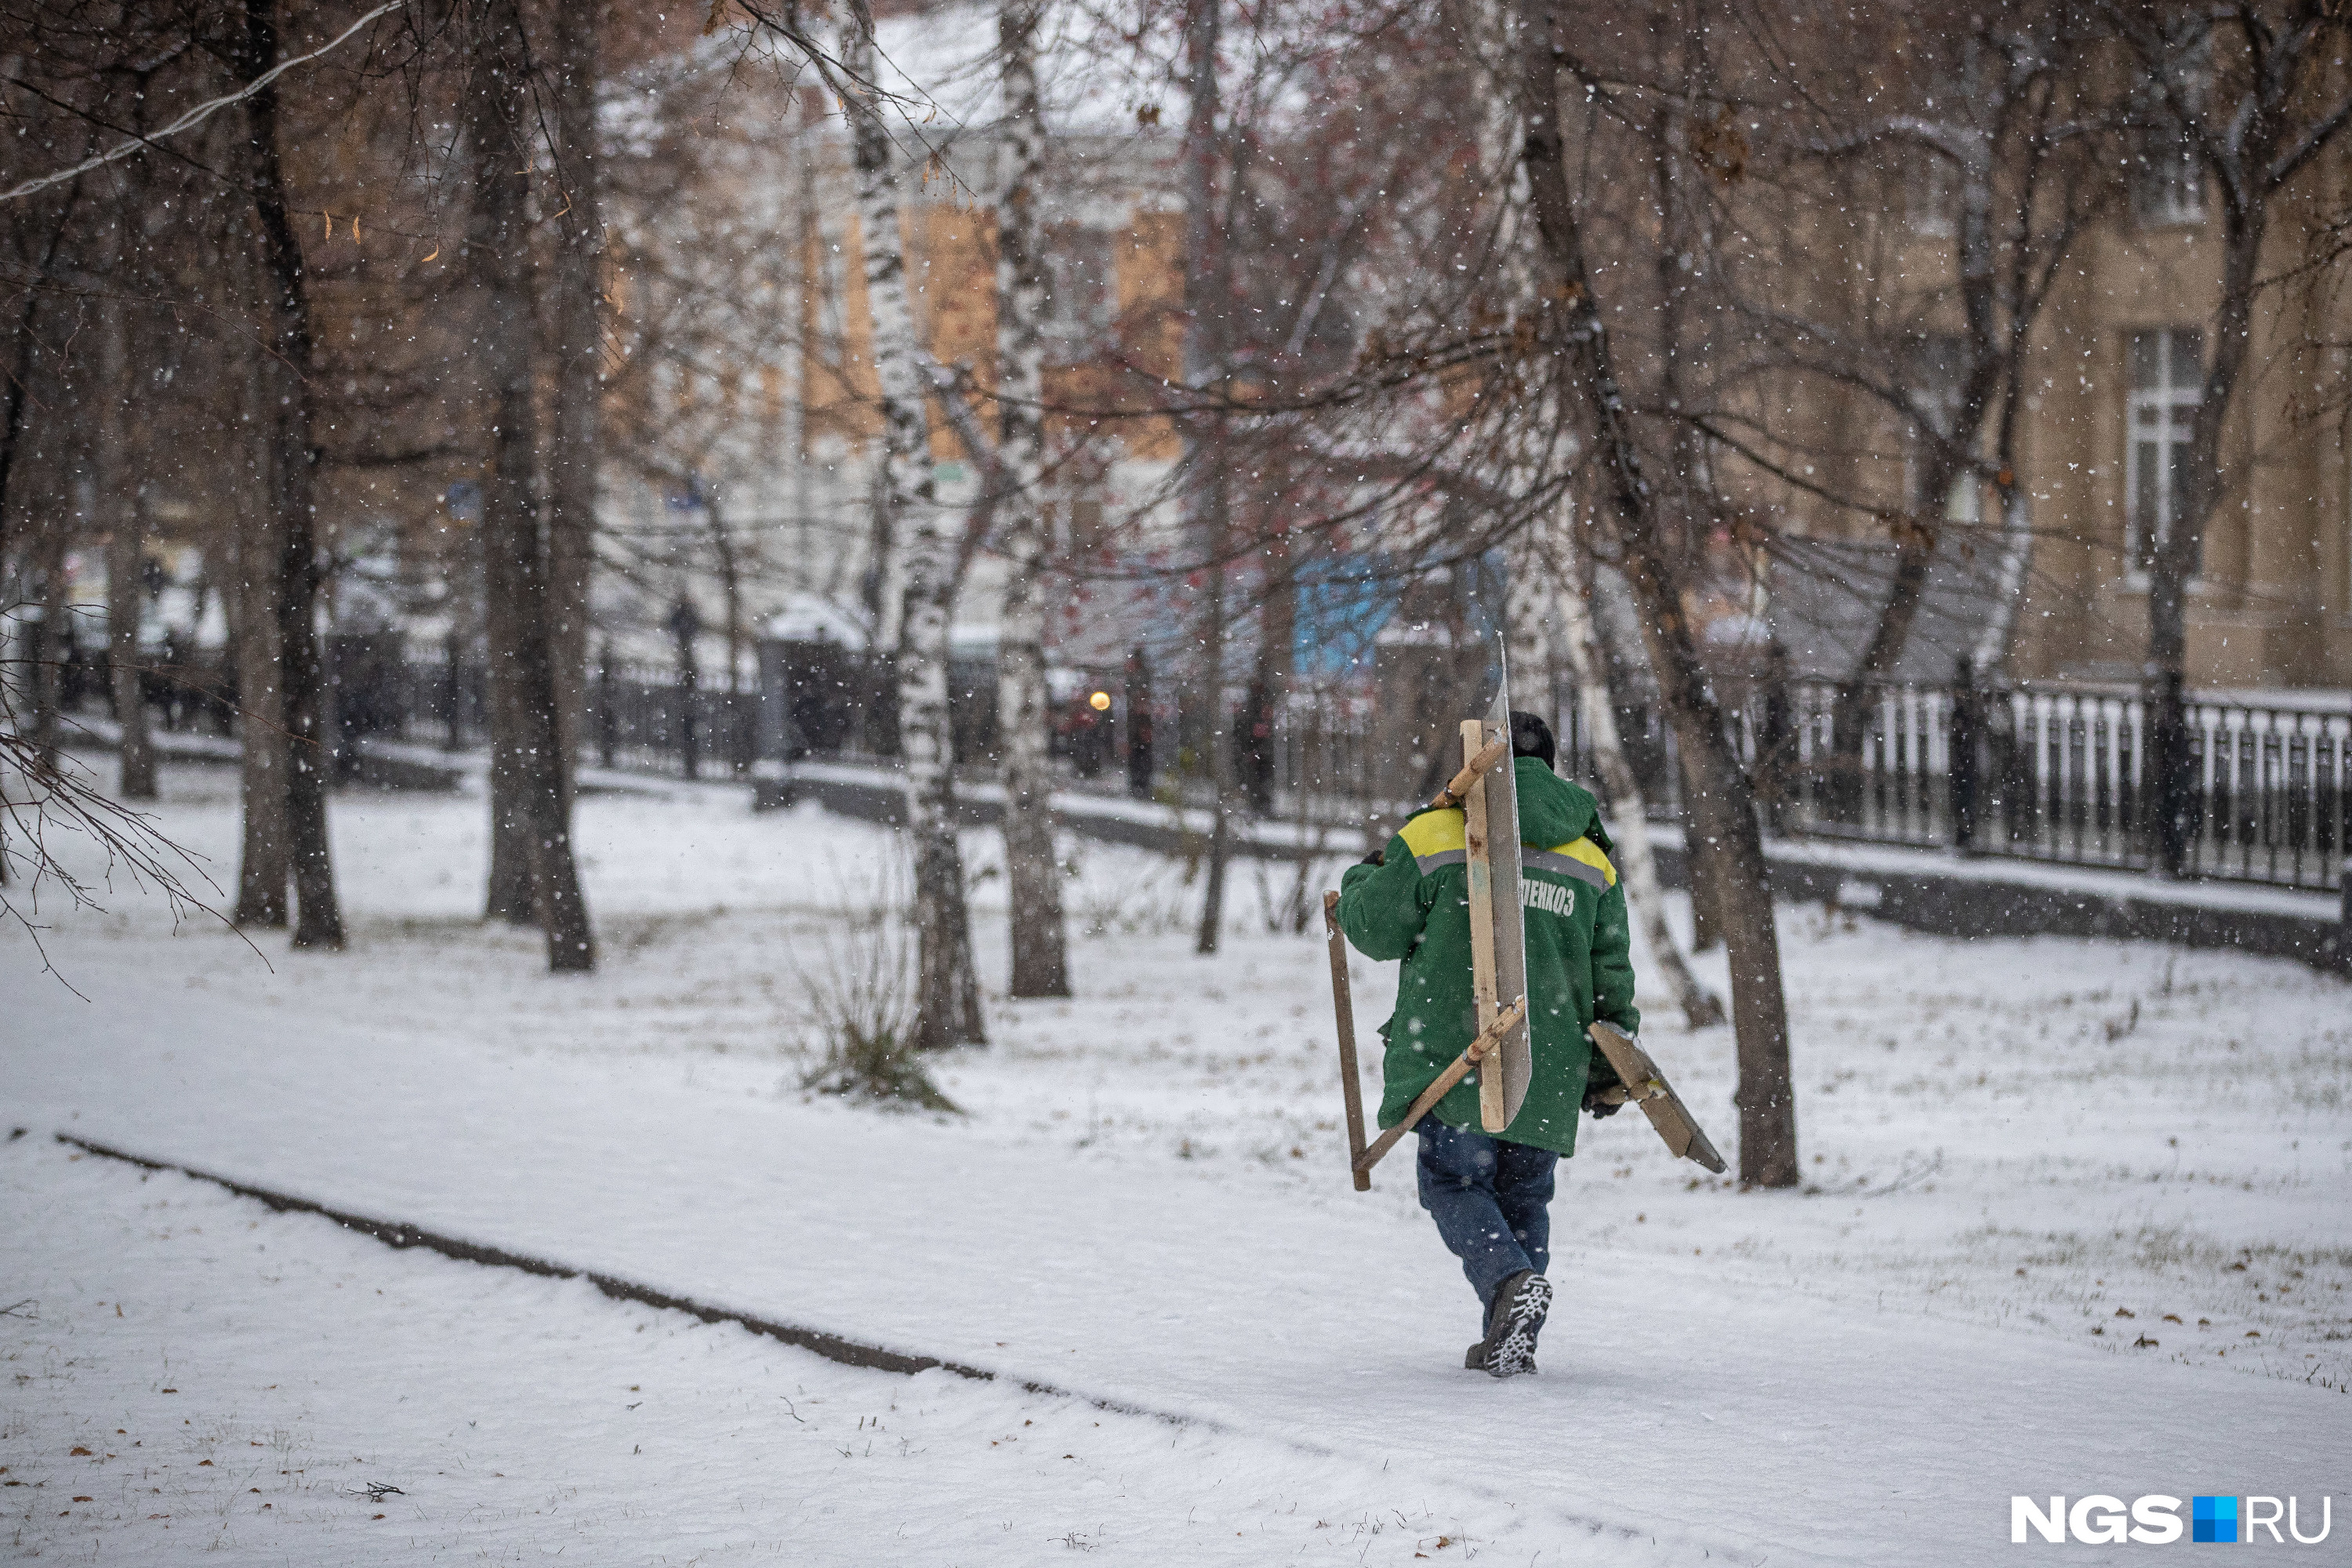 Пошла новосибирск. НГС погода зима фото сквер.